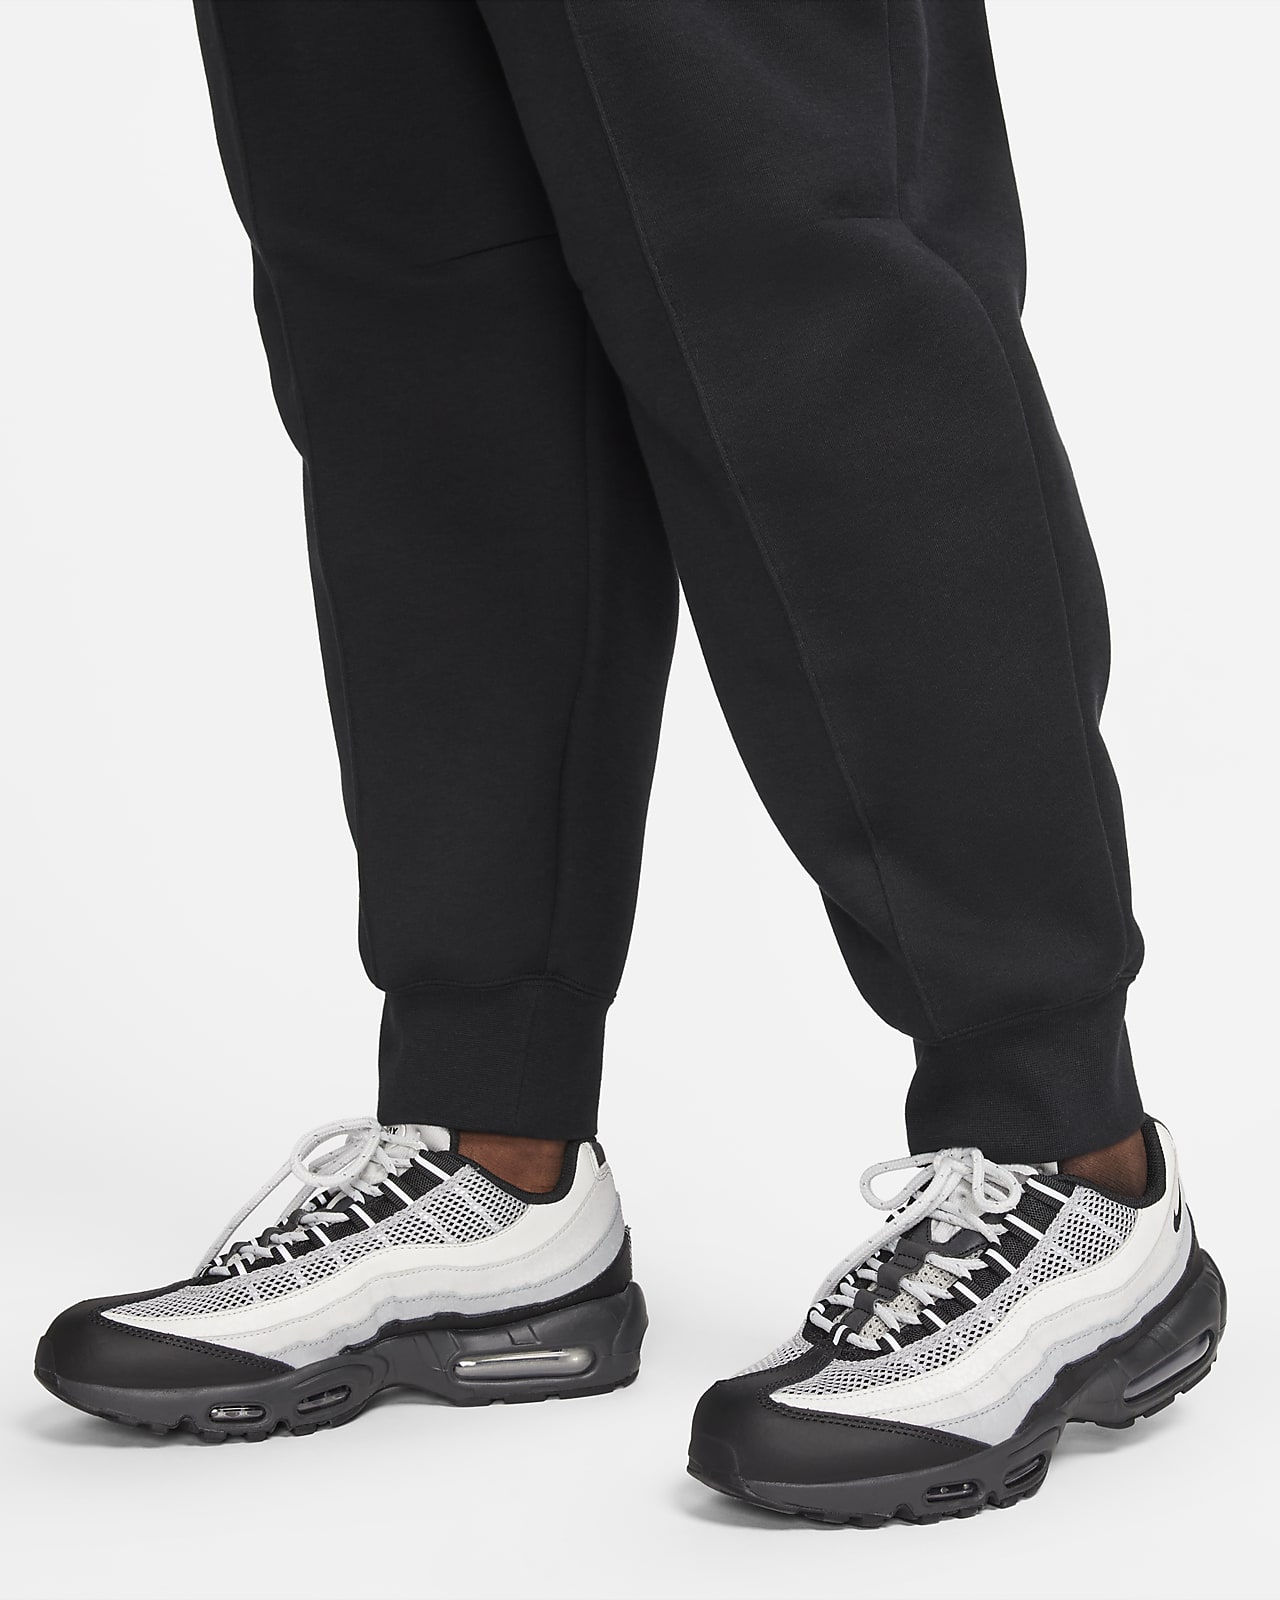 Nike Sportswear Tech Fleece Women's Mid-Rise Joggers (Plus Size).